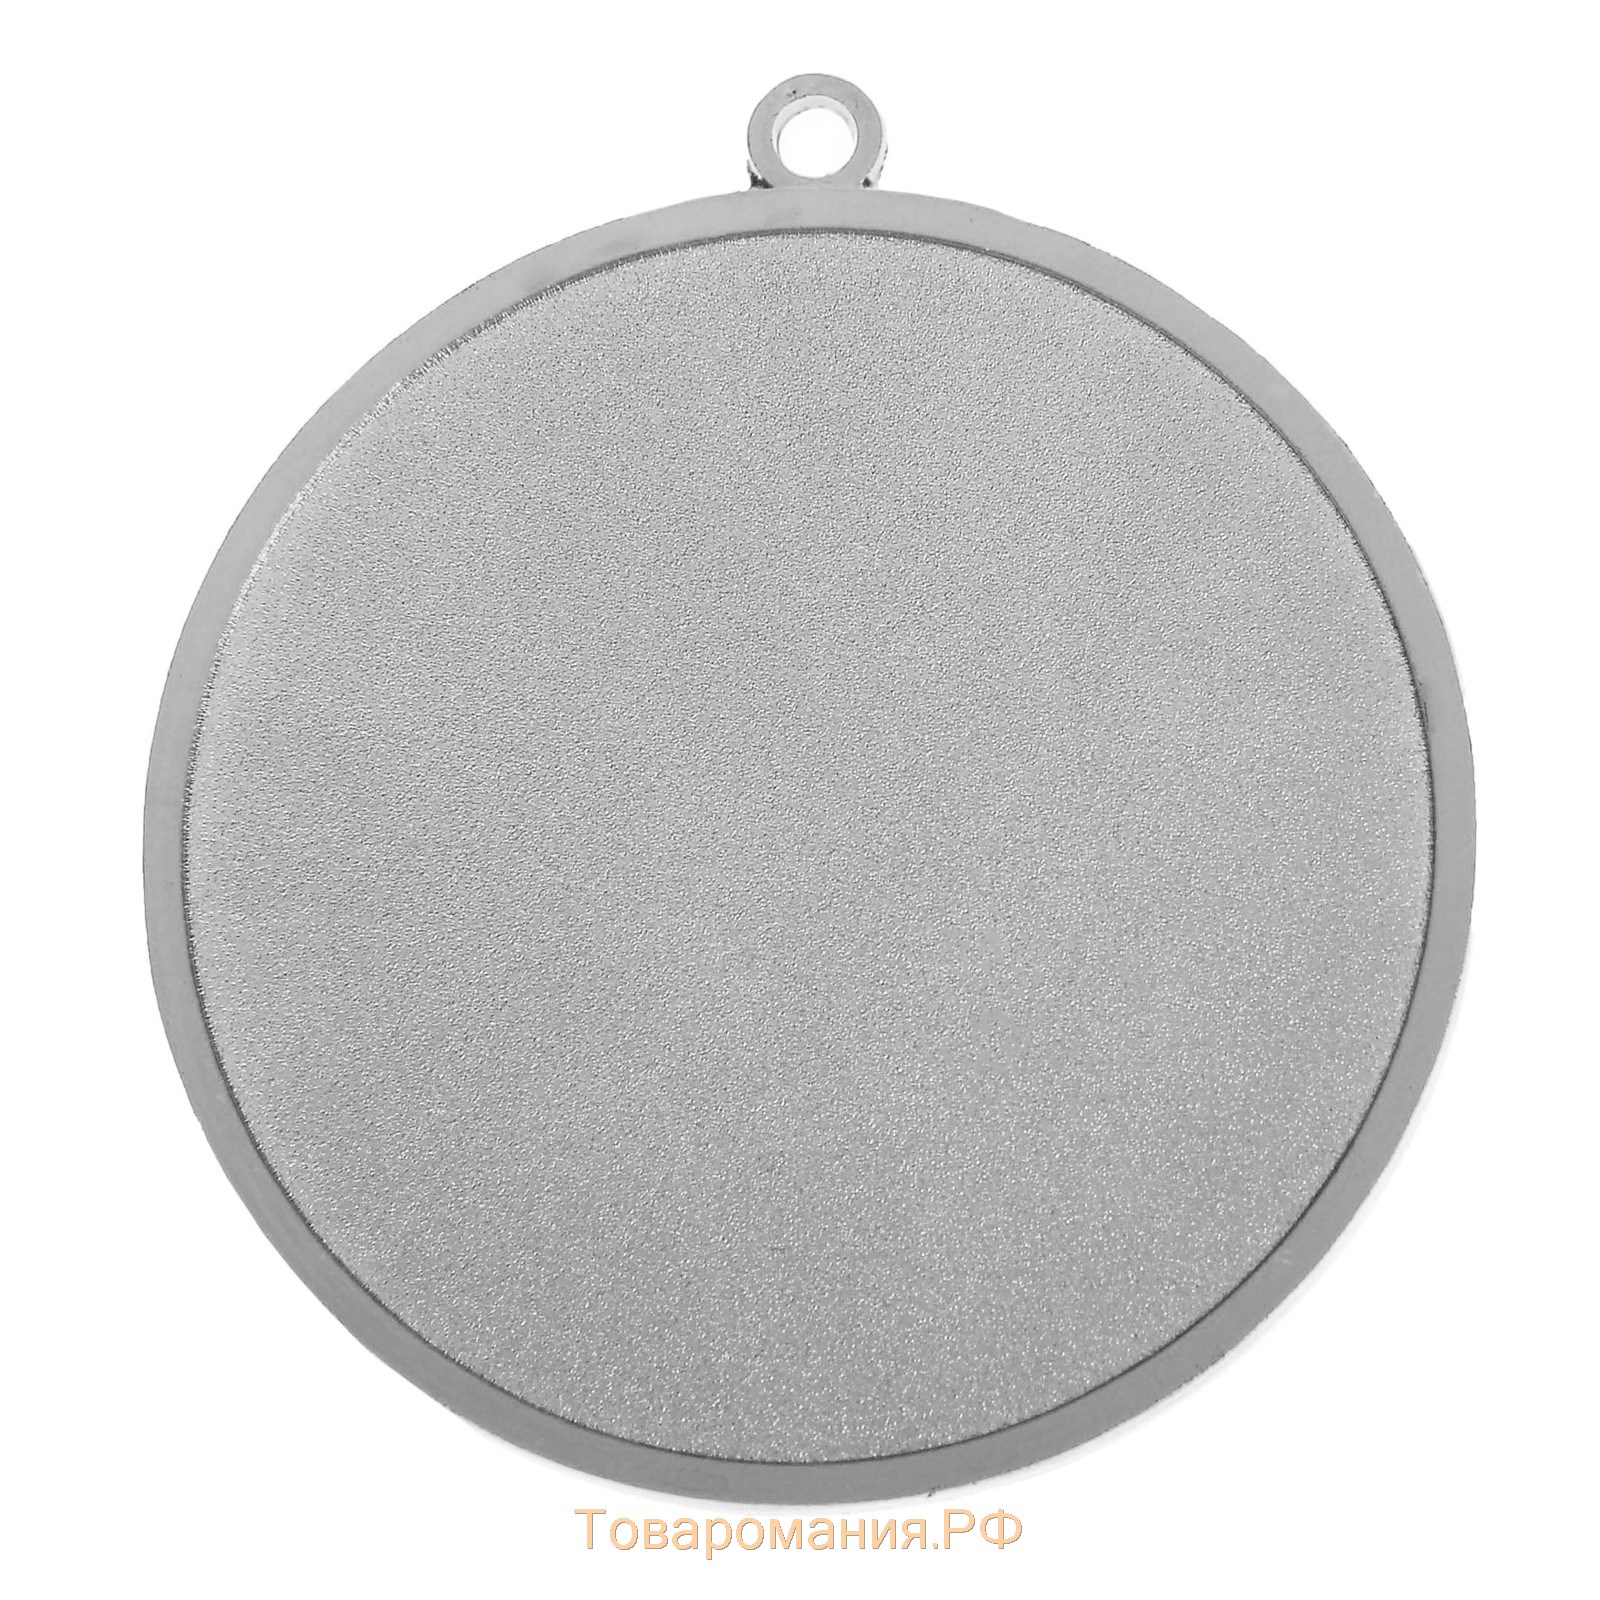 Медаль призовая 017, d= 4,5 см. 2 место. Цвет серебро. Без ленты